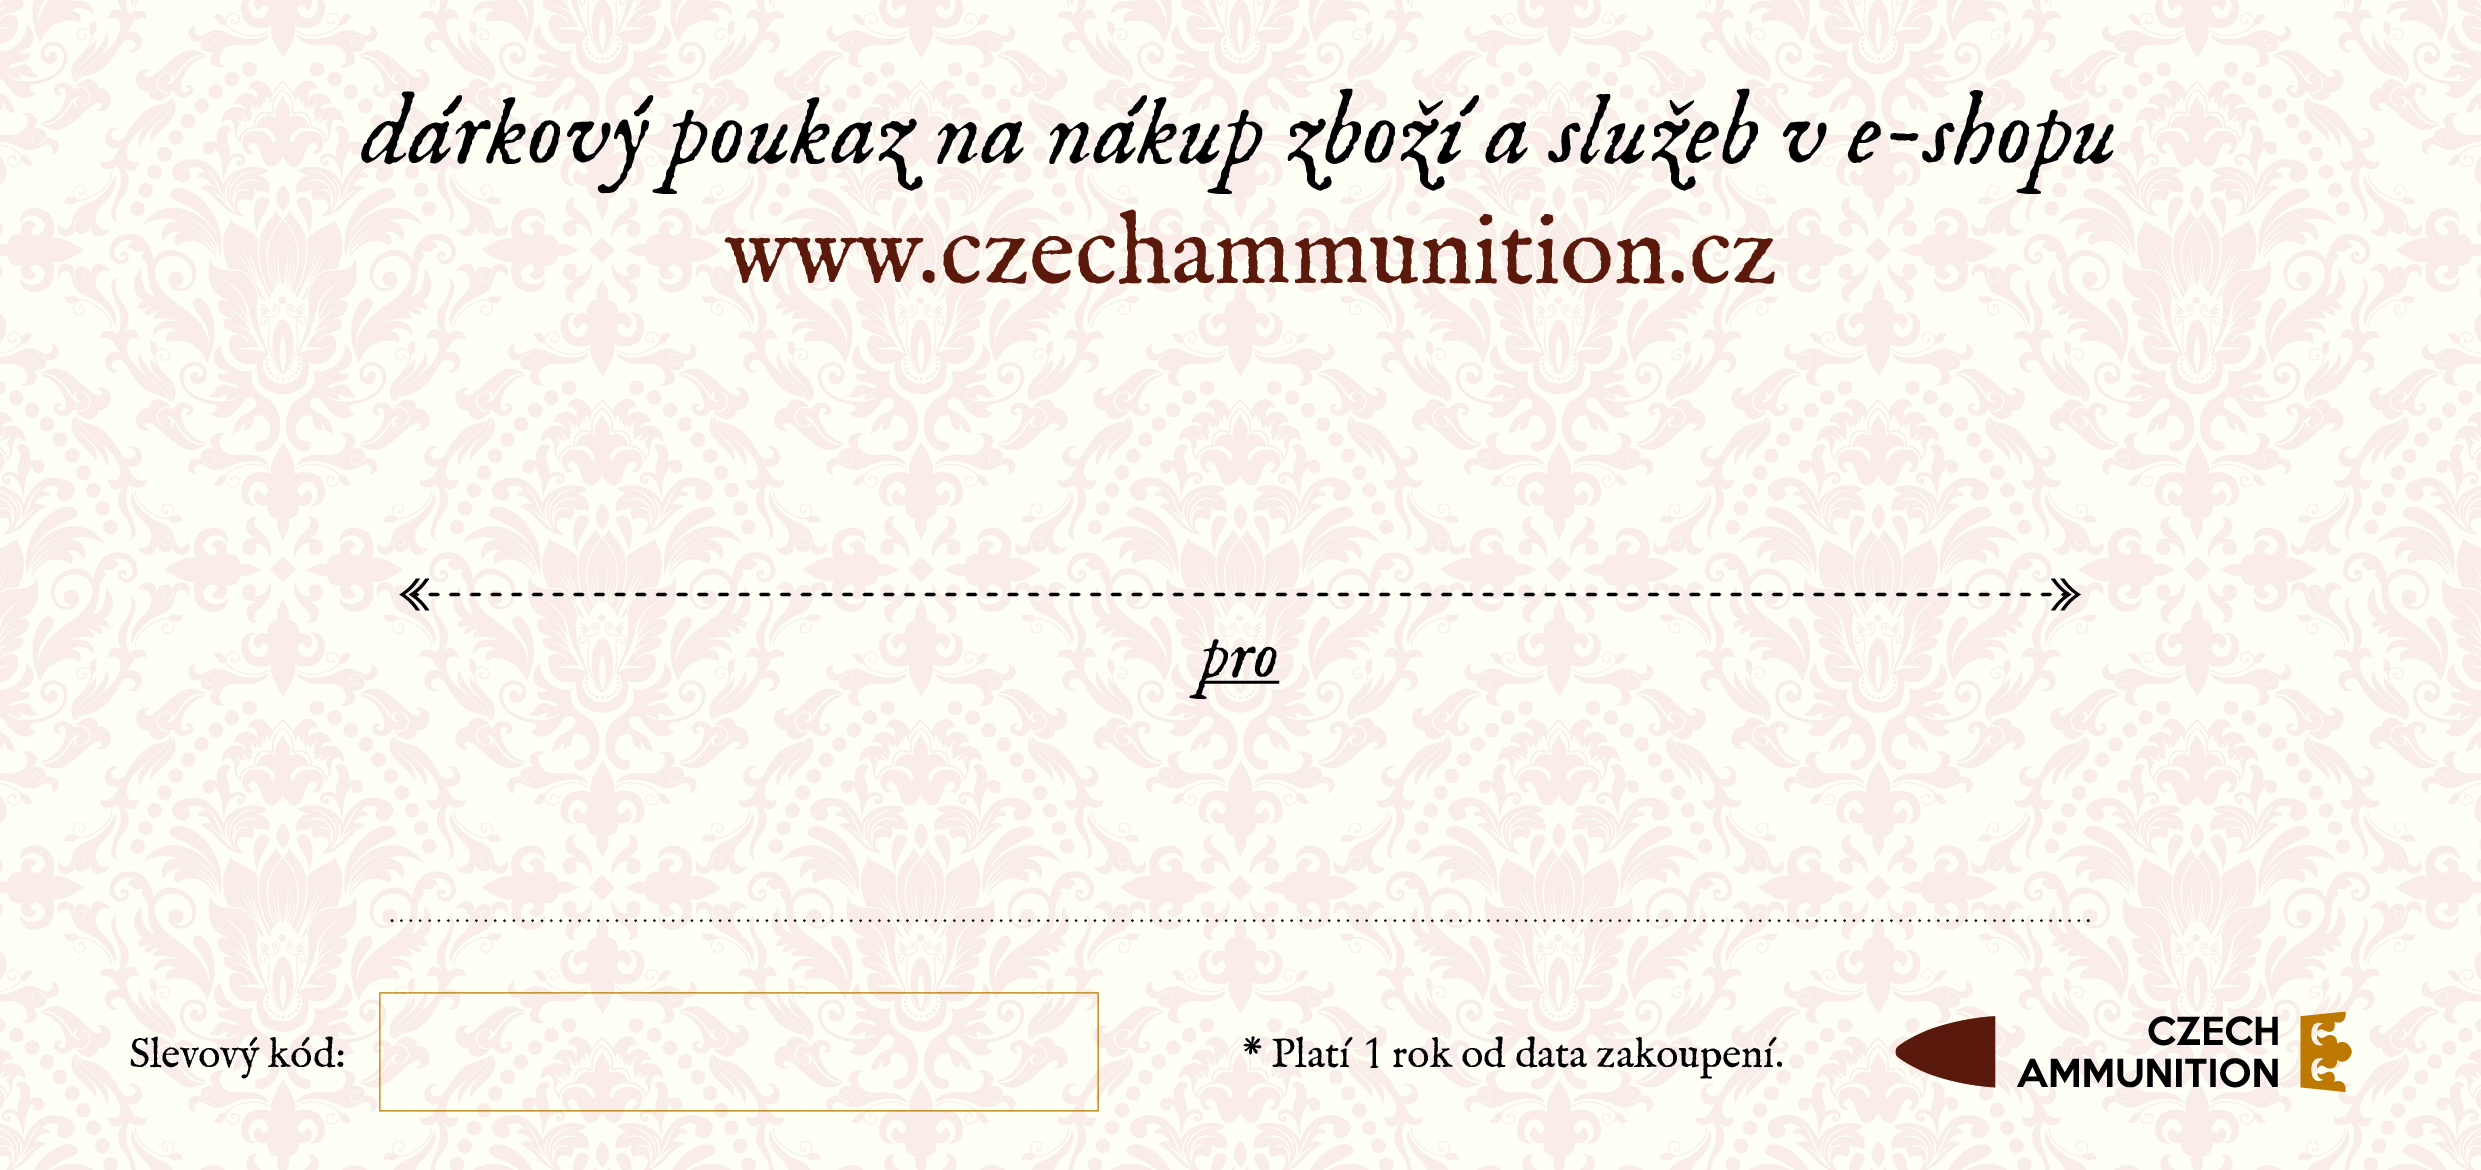 Dárkový poukaz na nákup v e-shopu www.czechammunition.cz v individuální hodnotě